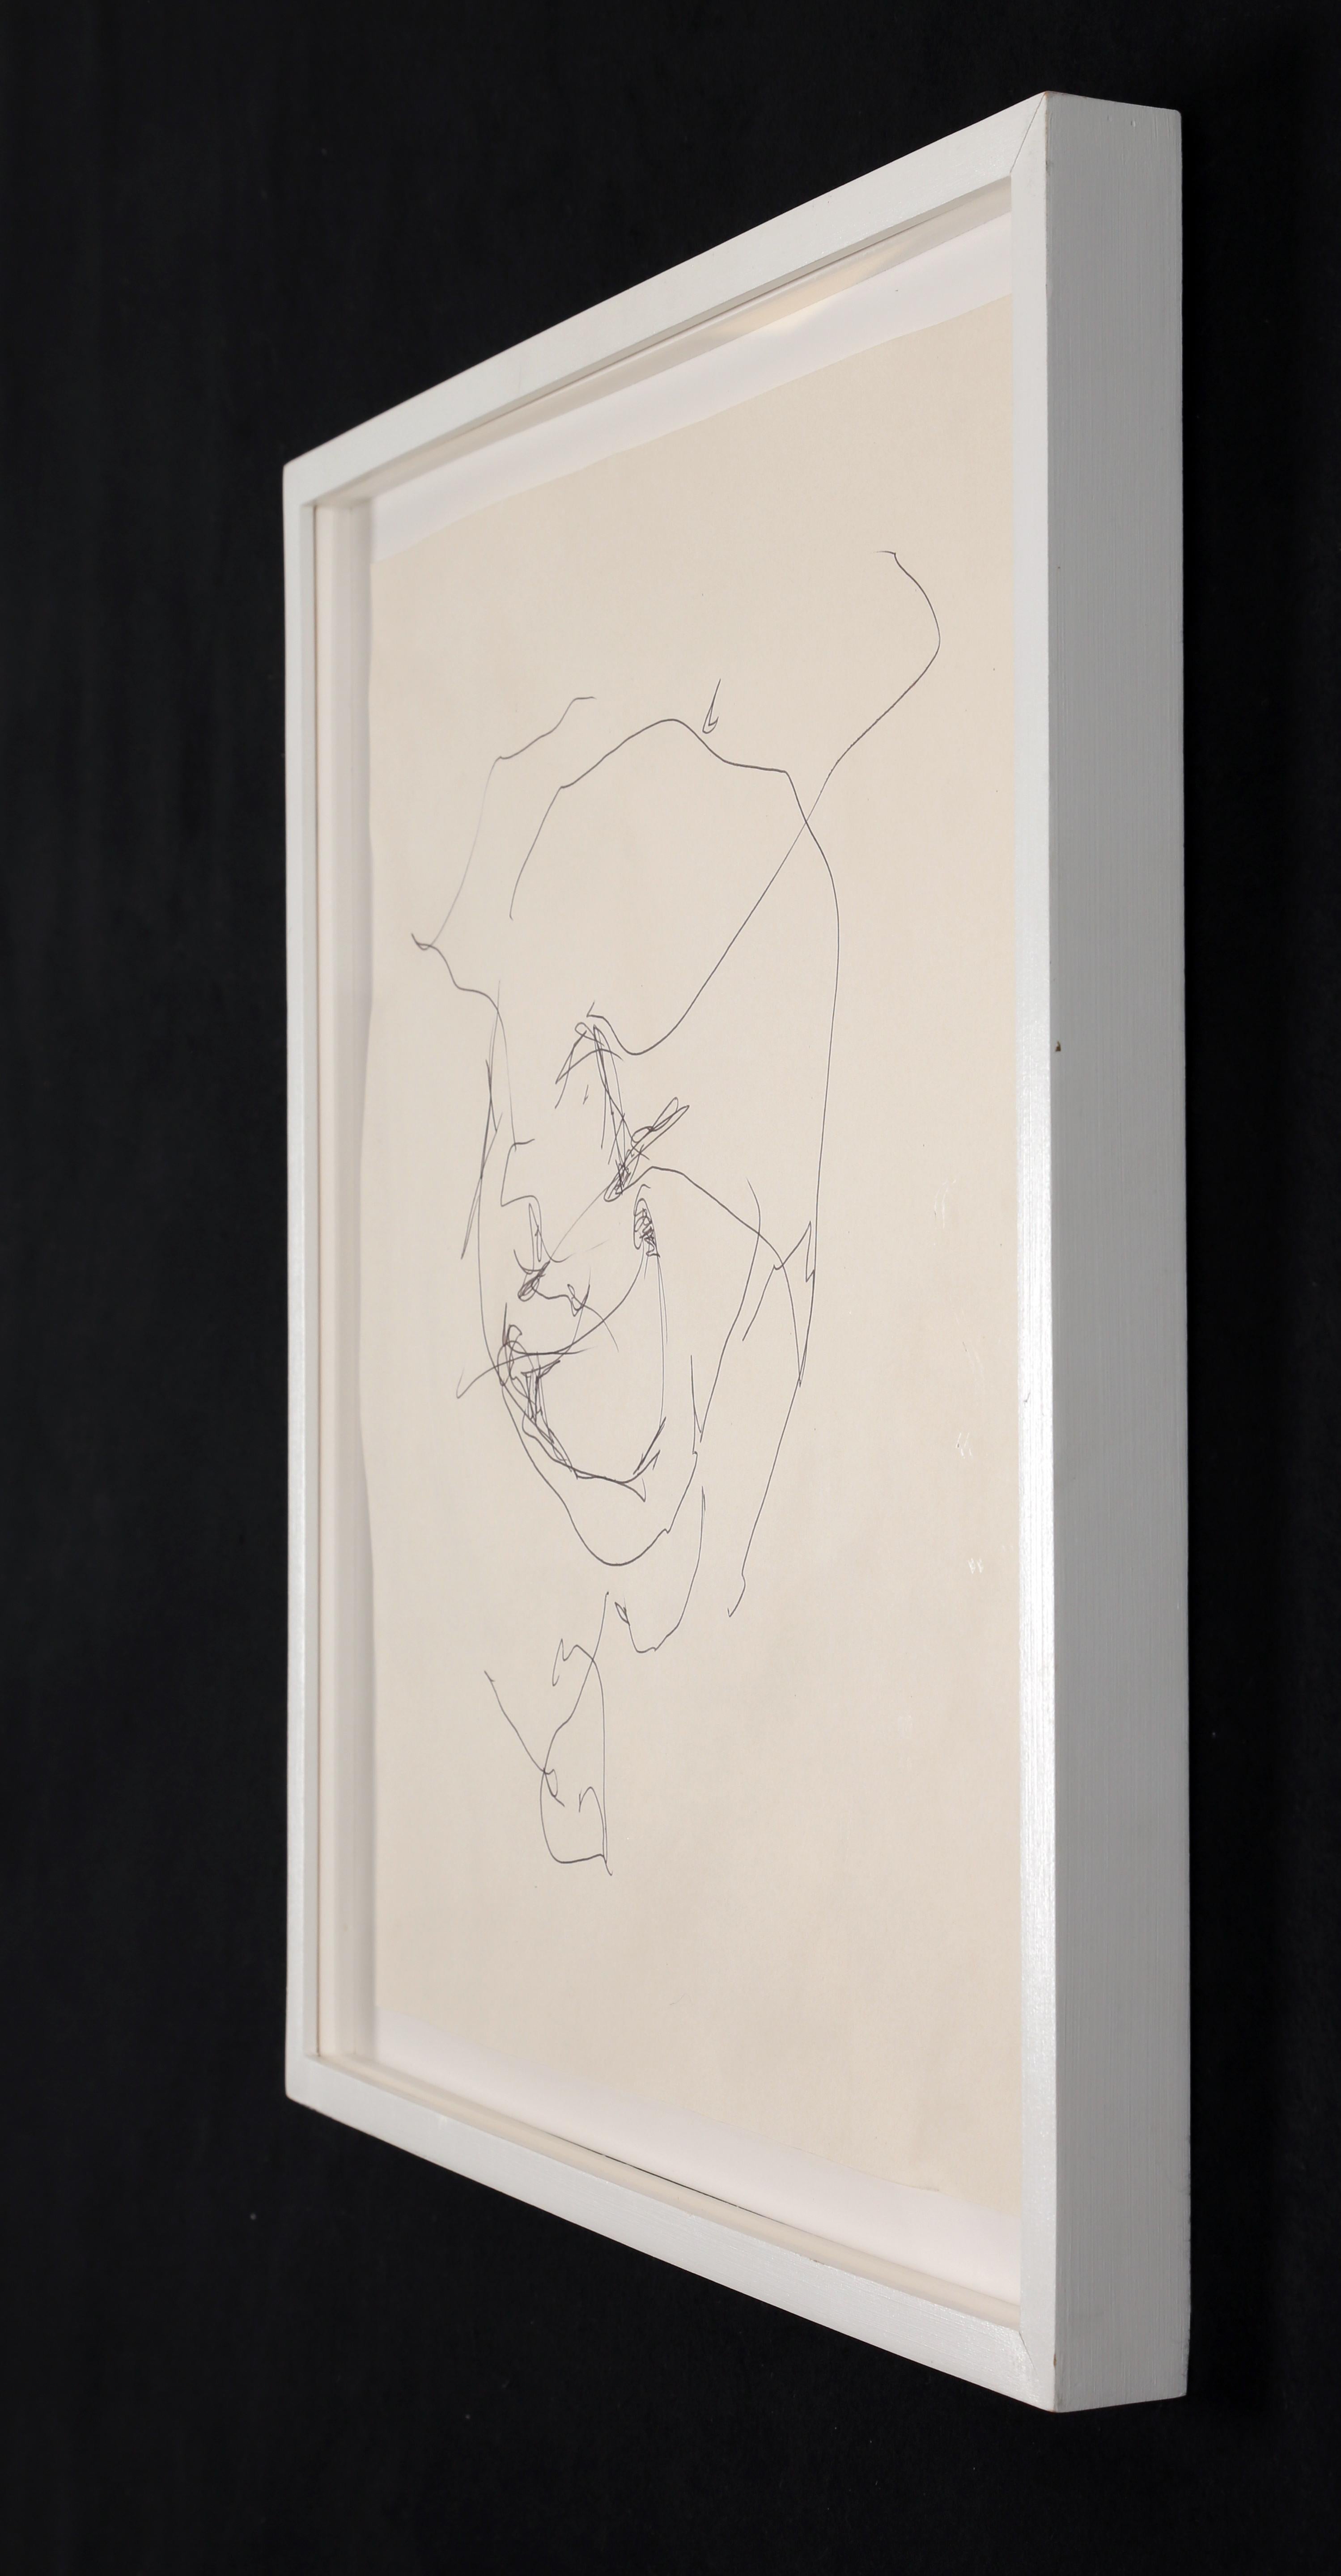 J. Parker Valentine
Sans titre
Encre sur papier
18 1/4 x 16 3/4 pouces  (46.4 x 42.5 cm)
